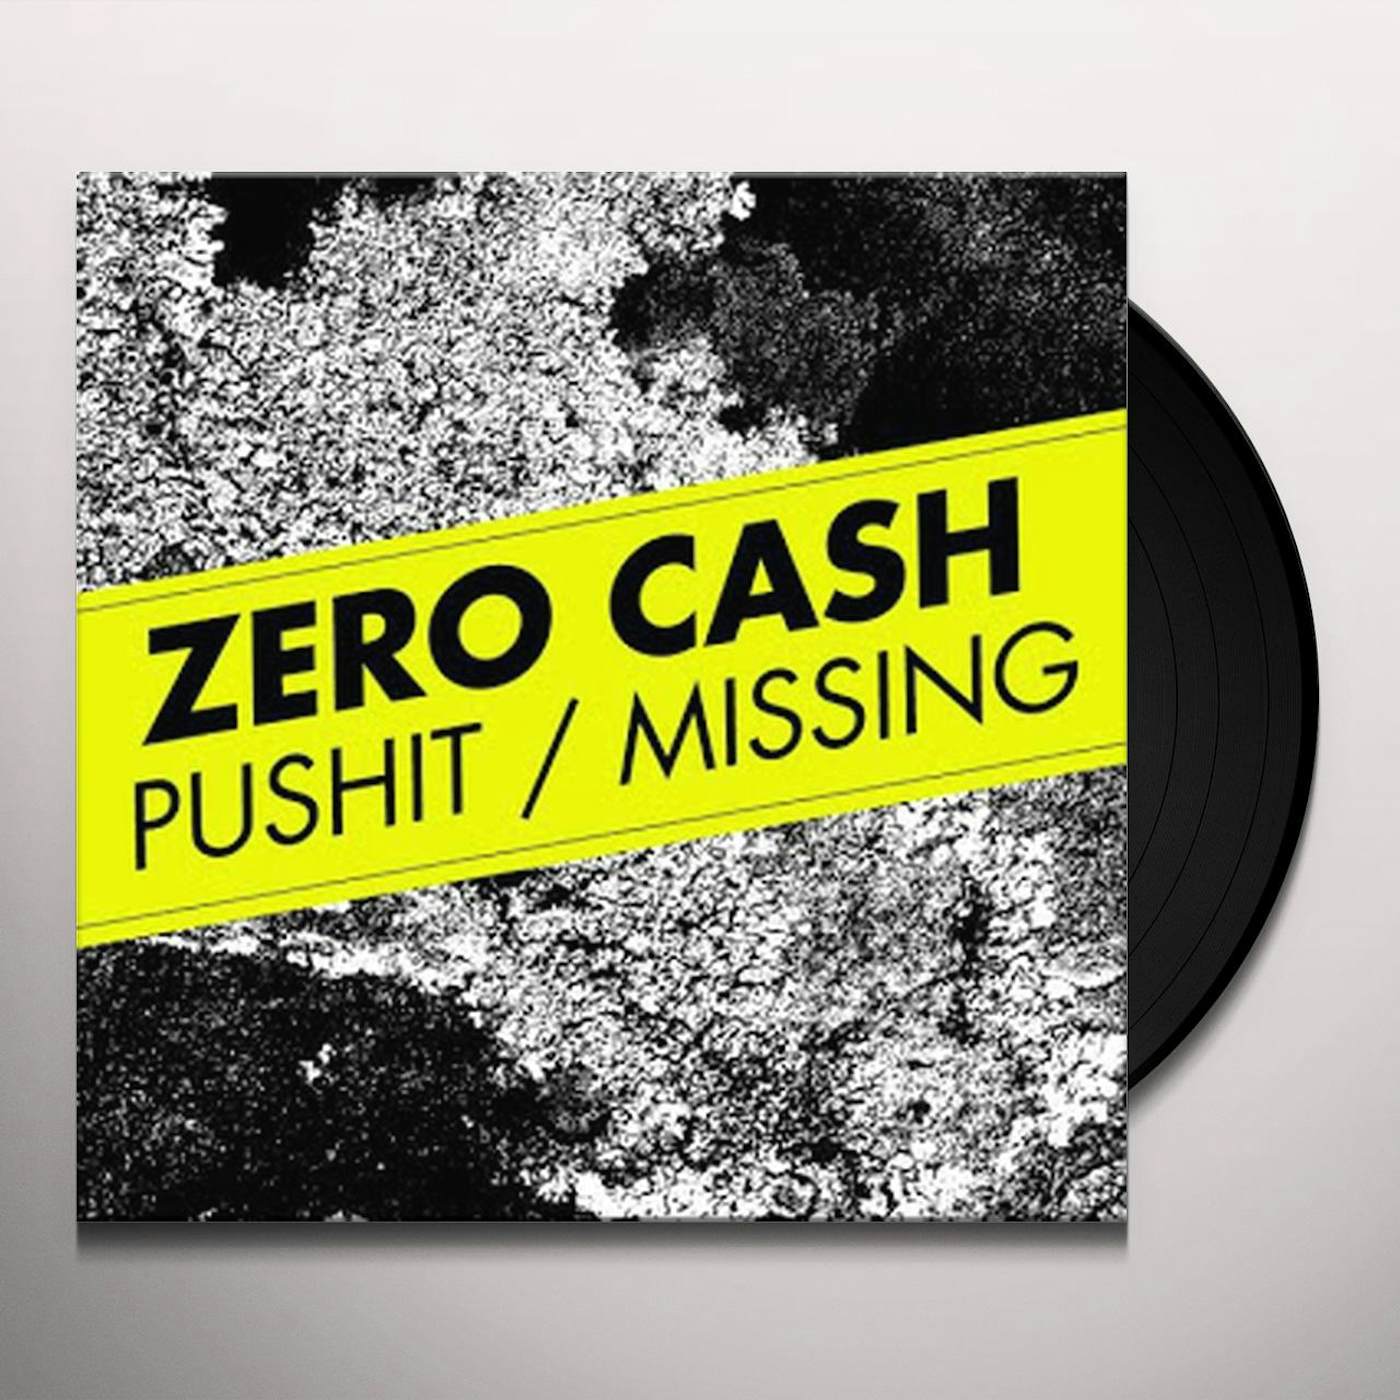 Zero Cash MISSING PUSHIT Vinyl Record